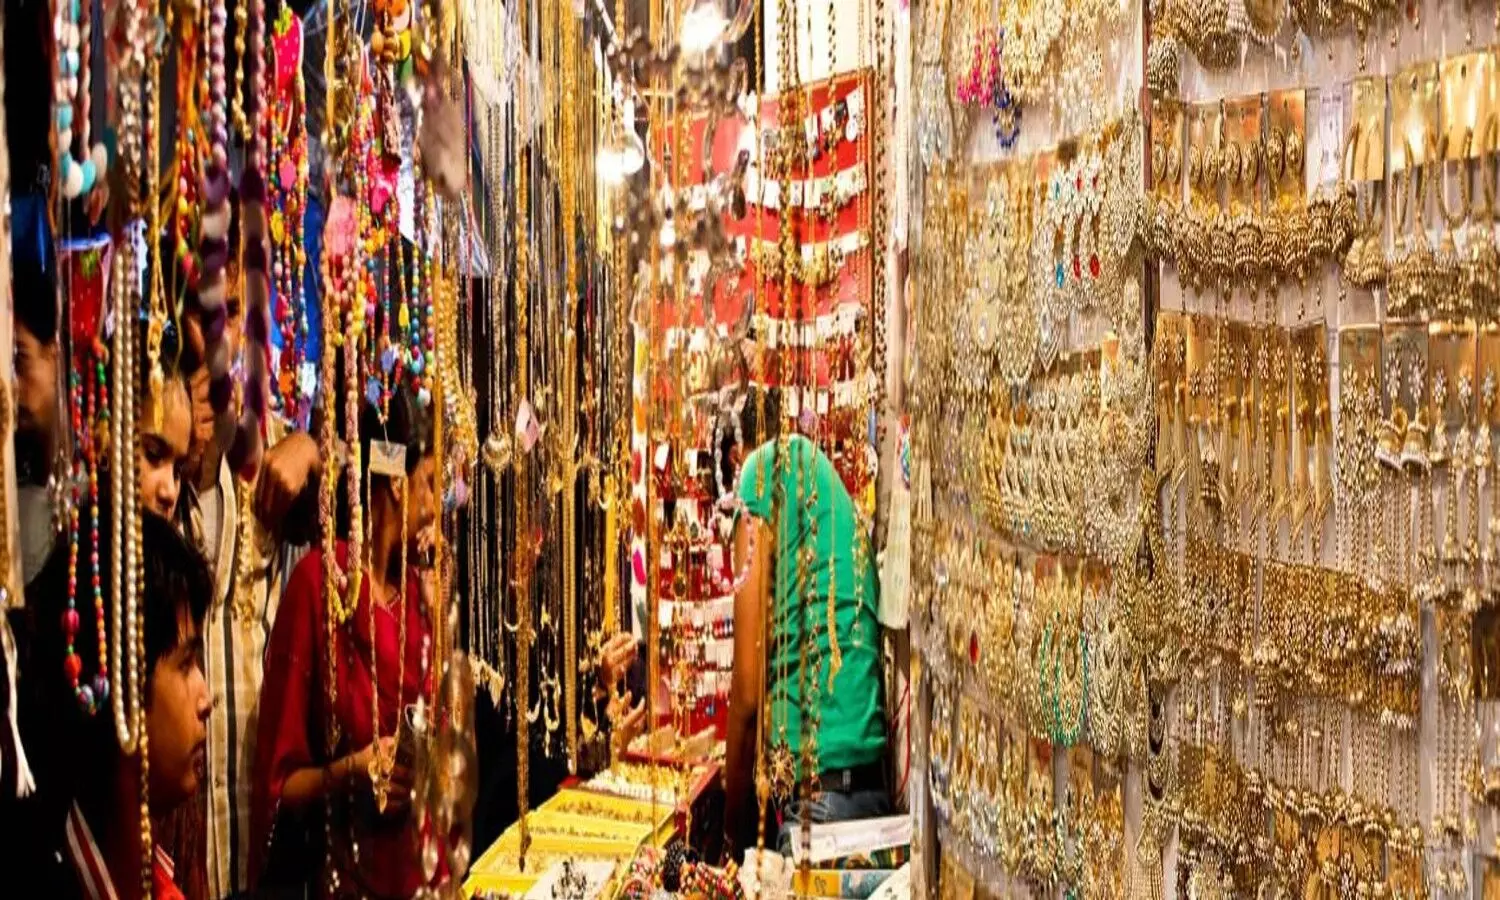 Gadbadjhala Market in Lucknow: लखनऊ की ये मार्केट महिलाओं के लिए सबसे बेस्ट, यहां मिलता है सबसे हट कर सामान